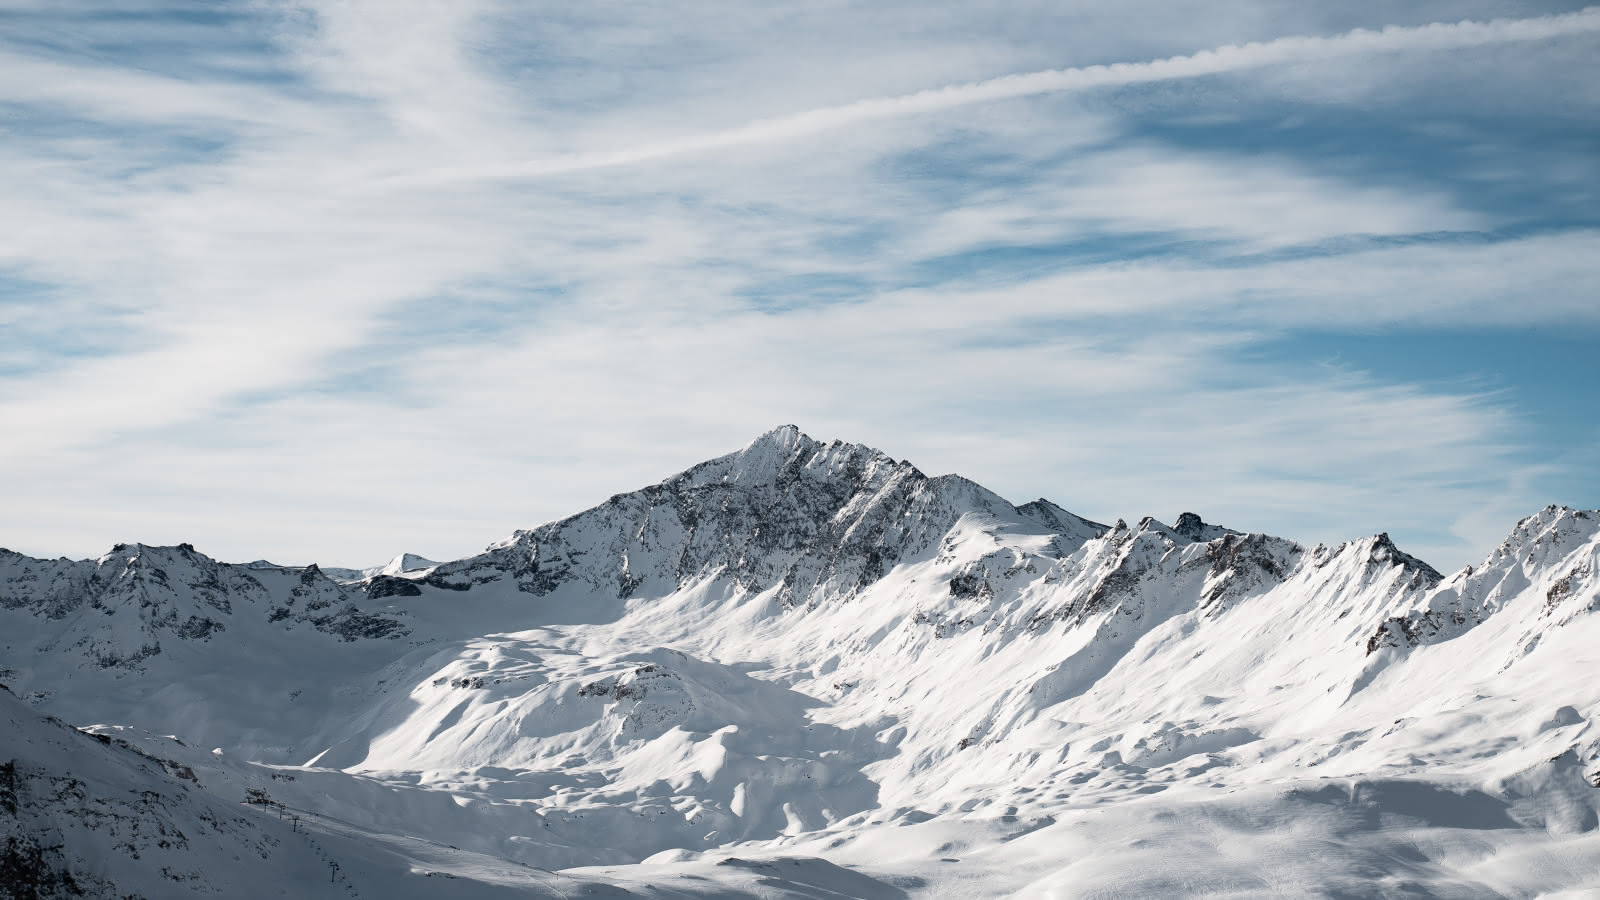 La Sana, sommet mythique de Val d'Isère, s'offre à nous dans toute sa splendeur.